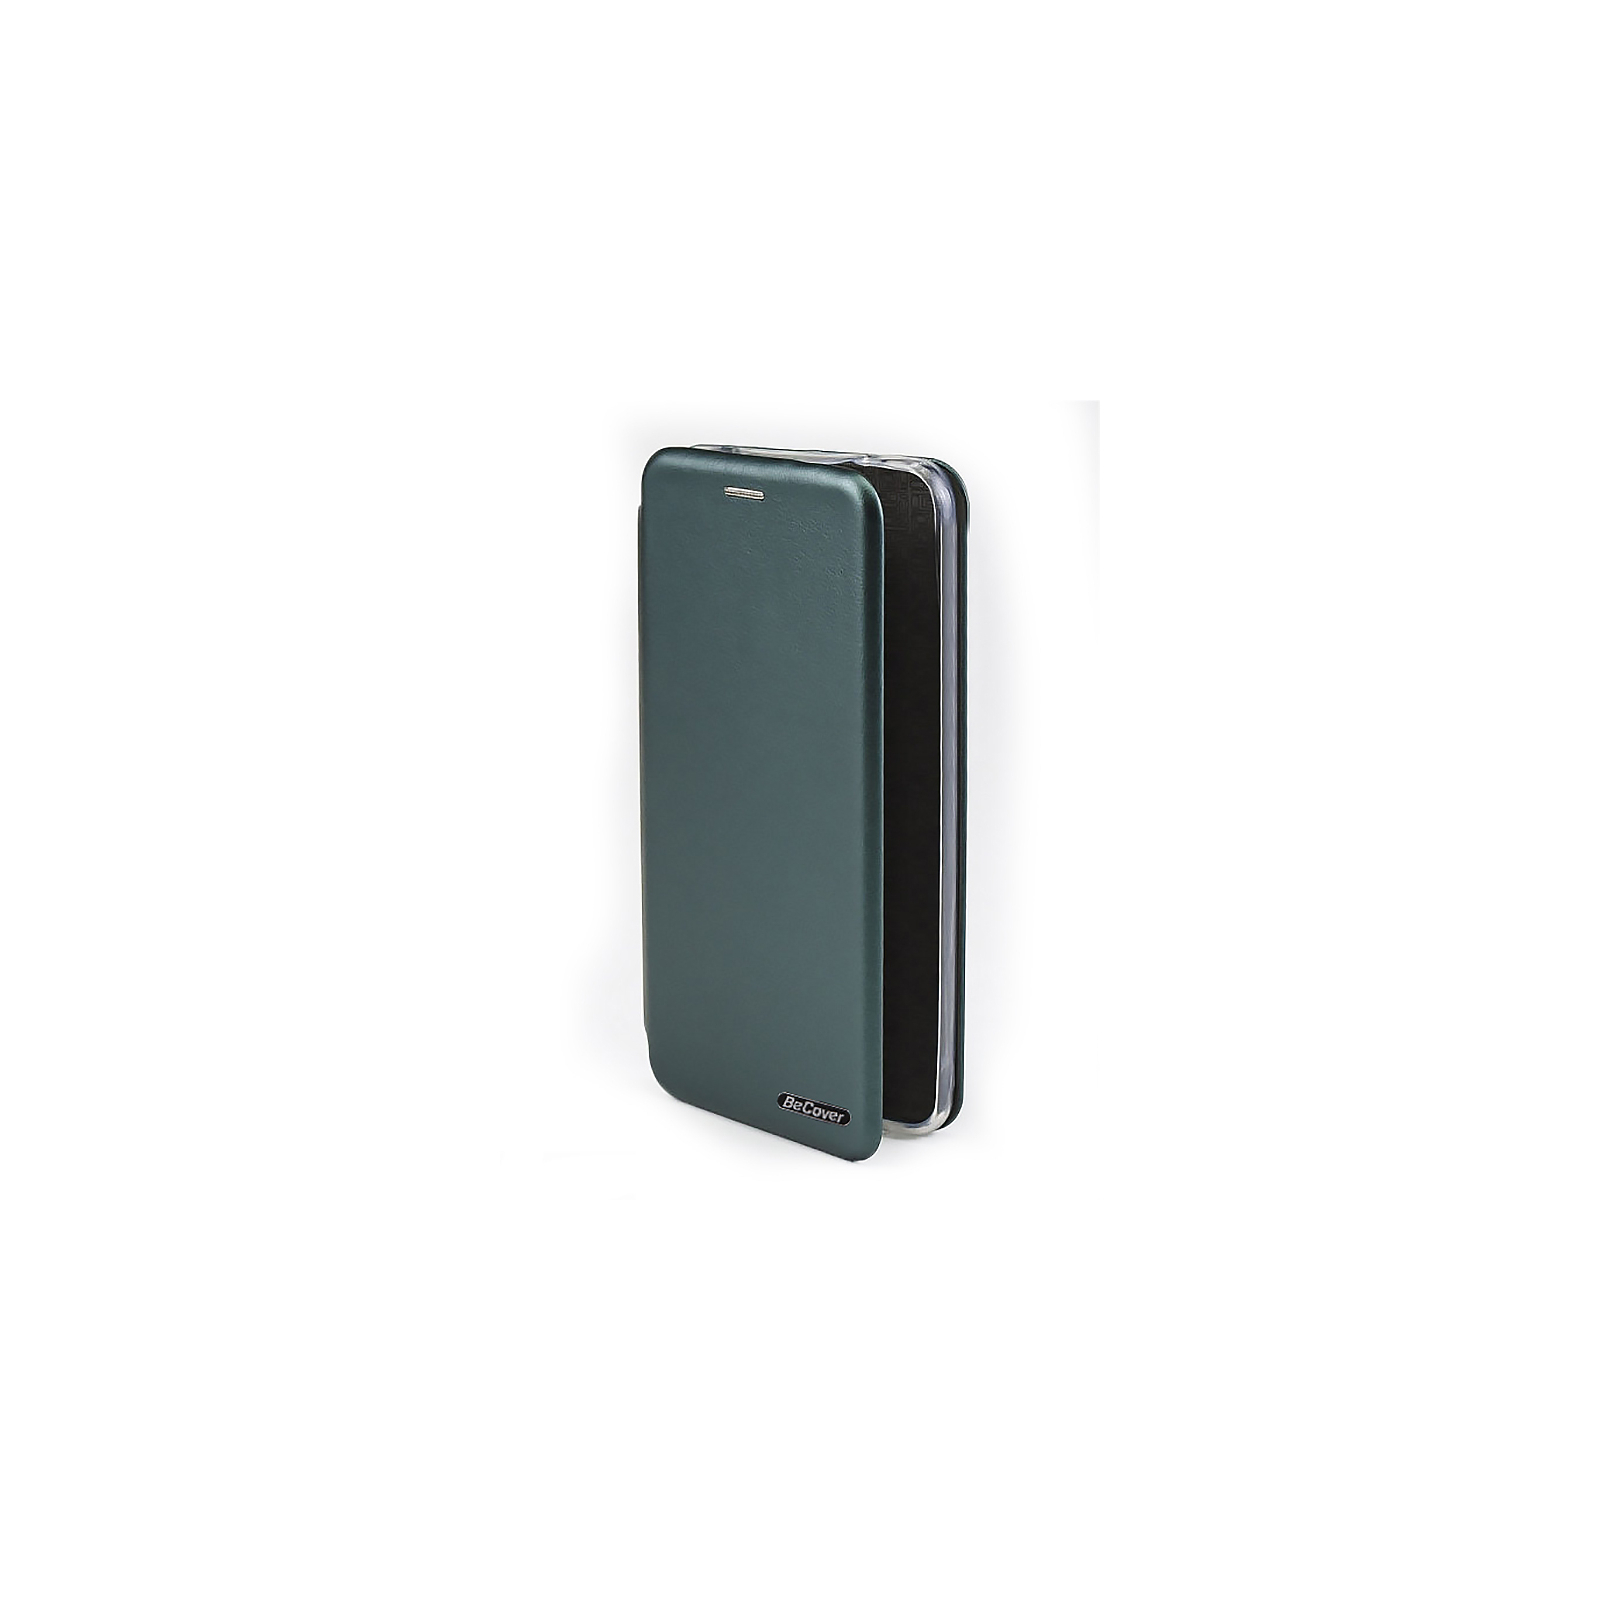 Чехол для мобильного телефона BeCover Exclusive Motorola Moto G32 Black (708995)